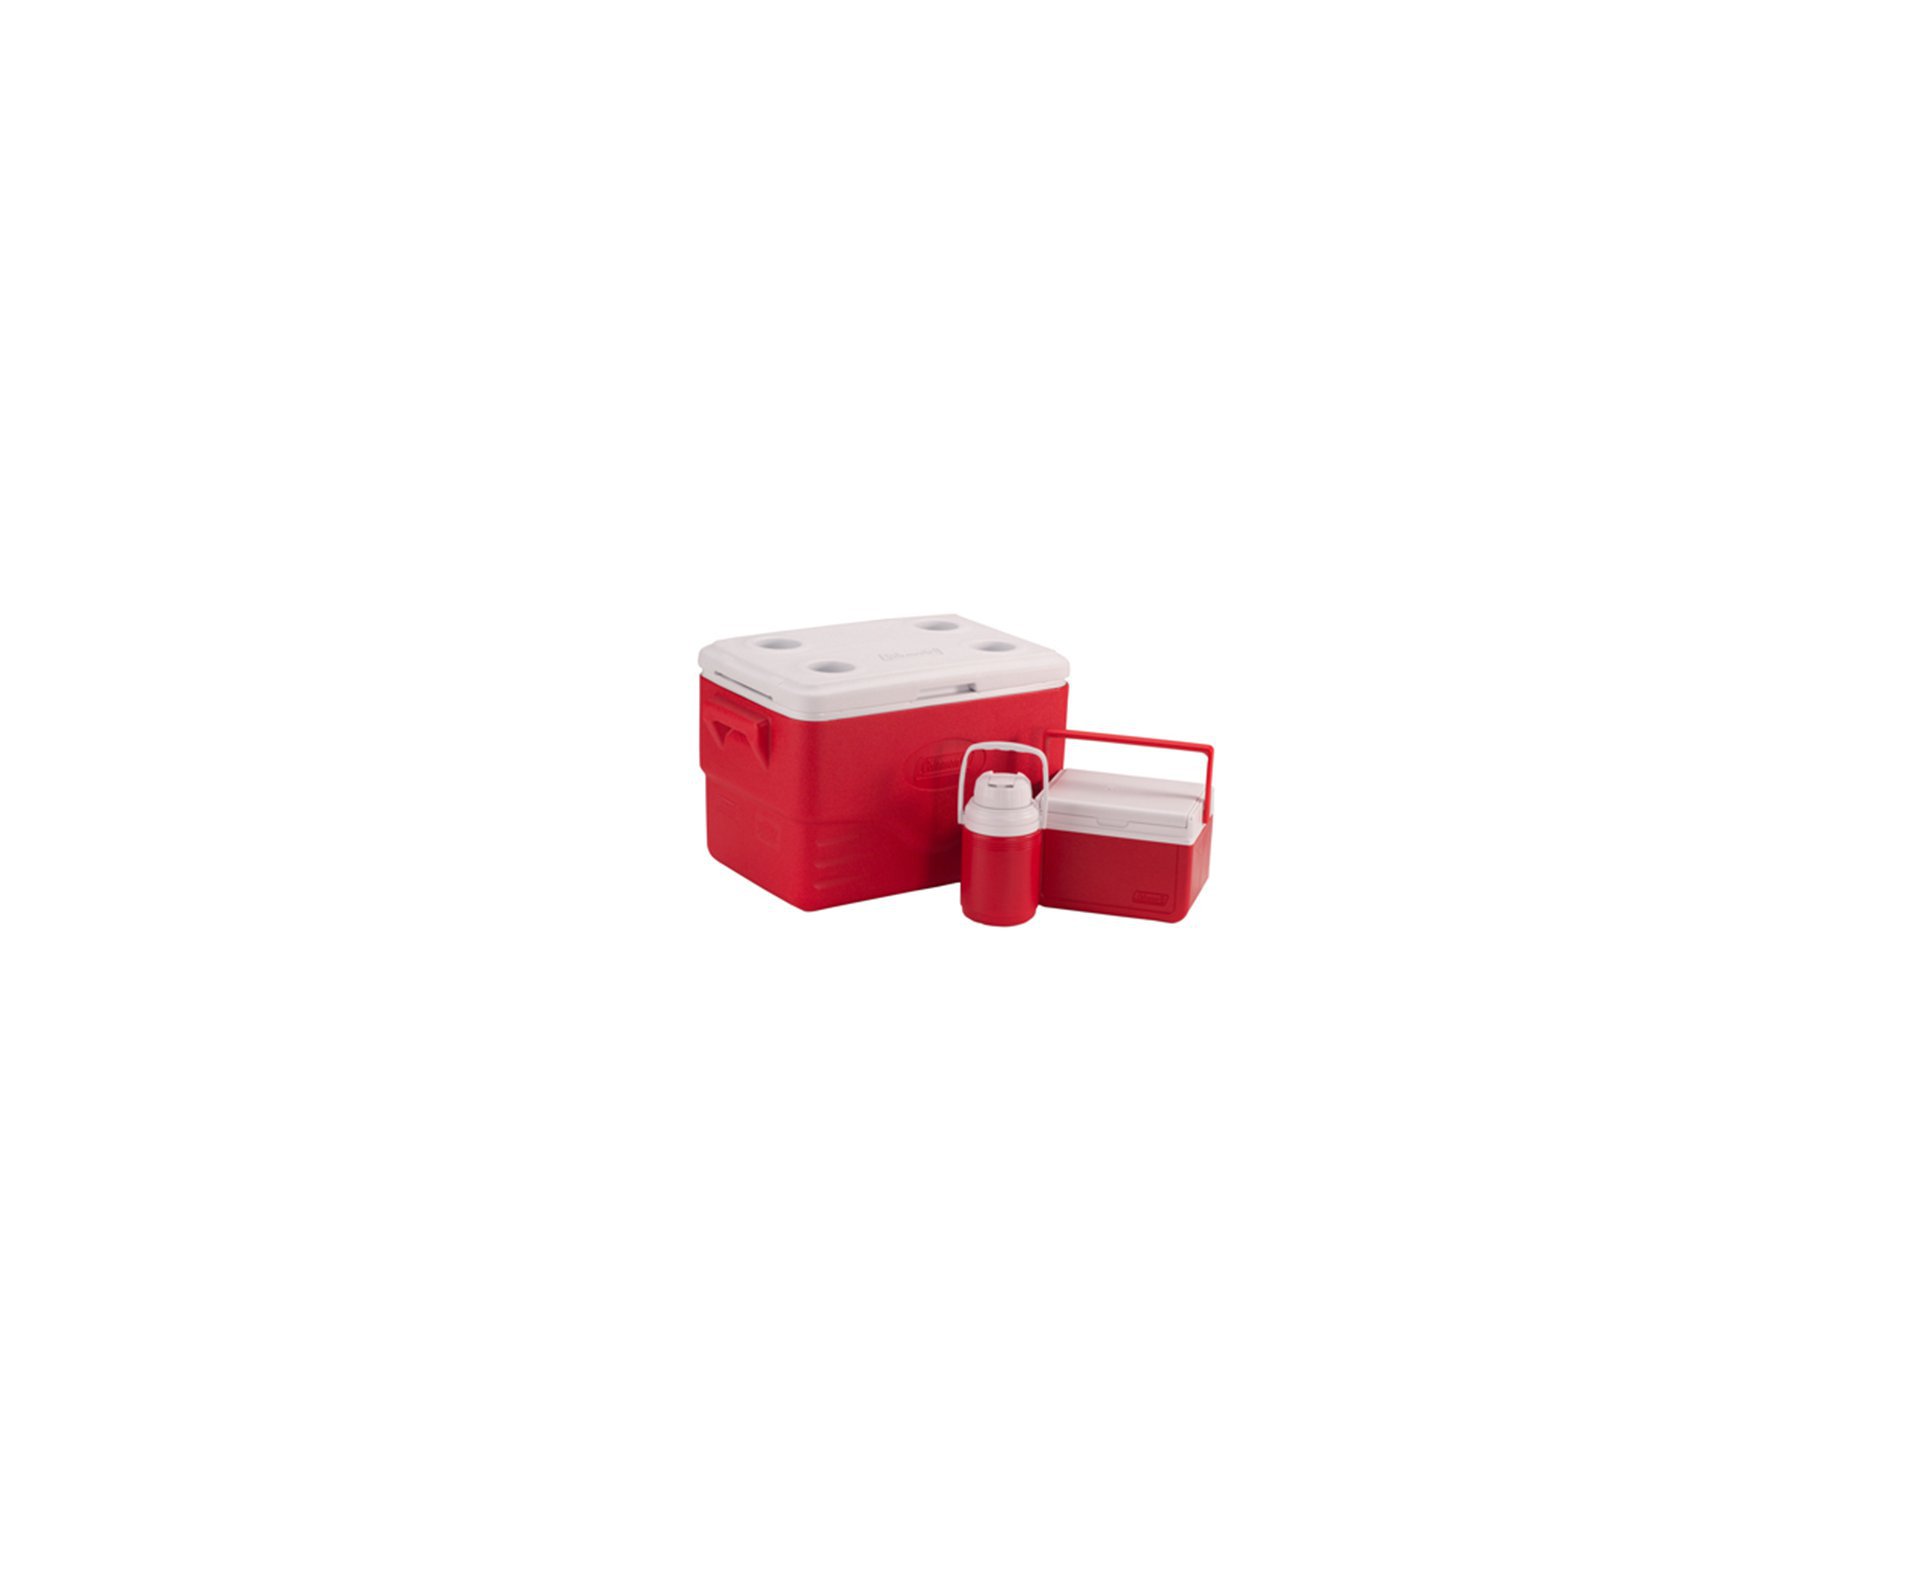 Combo Caixa Térmica 36 Qt (caixa 34 L + Garrafa 1,2 L + Caixa 5 L) Vermelho - Coleman